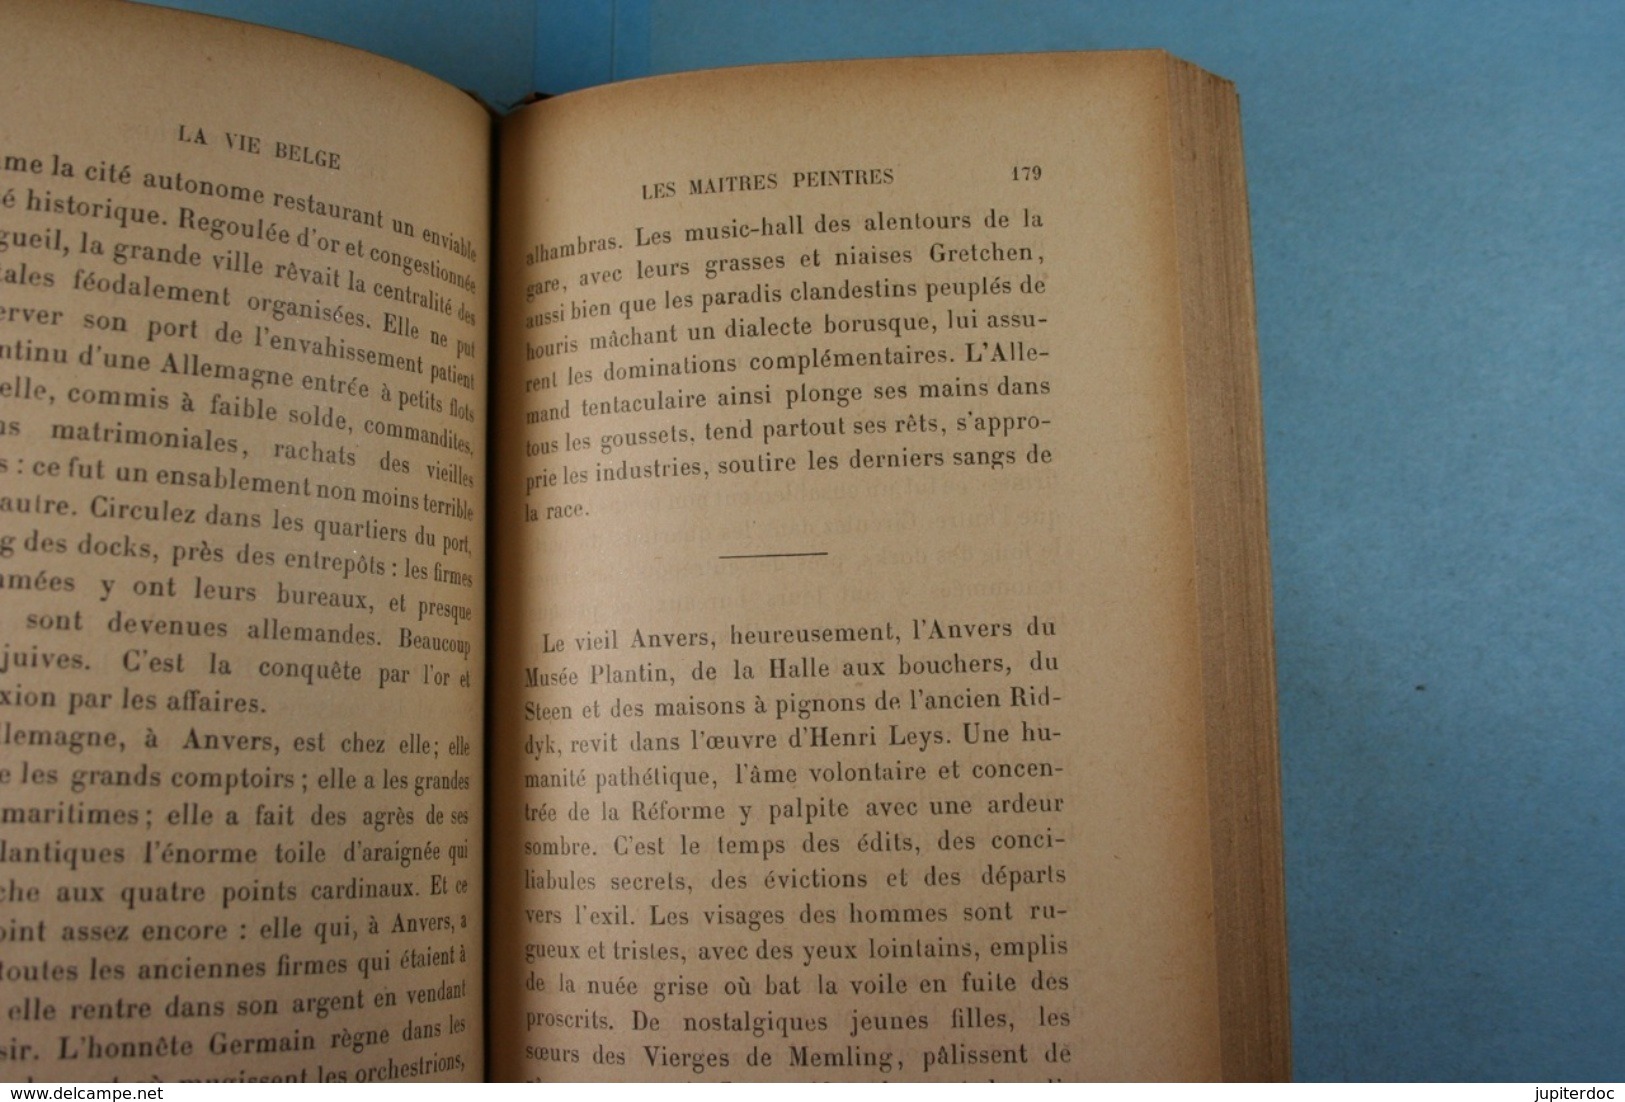 La vie belge Camille Lemonnier 1905 Edit. Fasquelle Paris